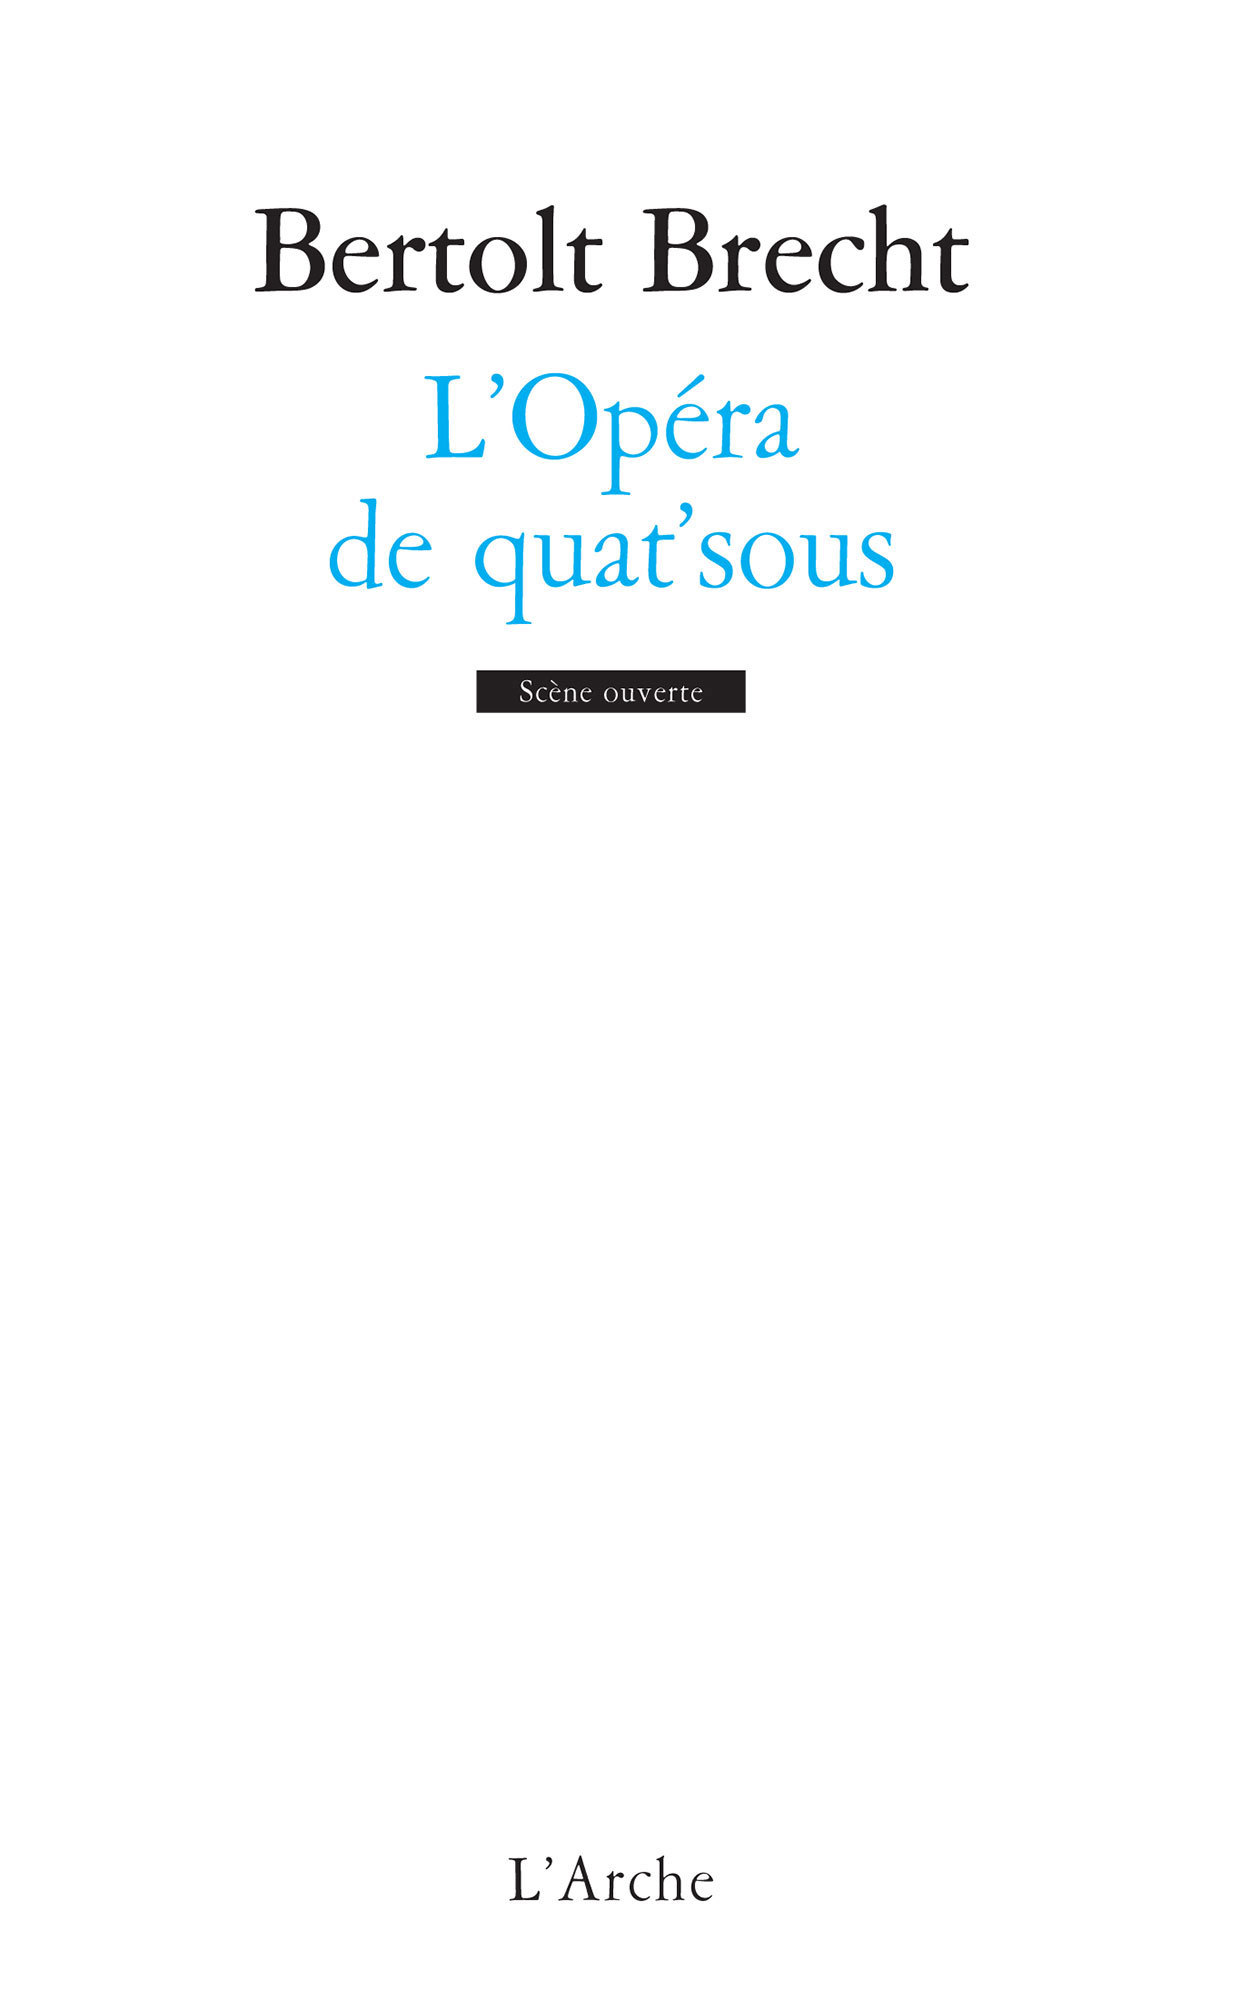 L'Opéra de quat'sous (9782851810069-front-cover)